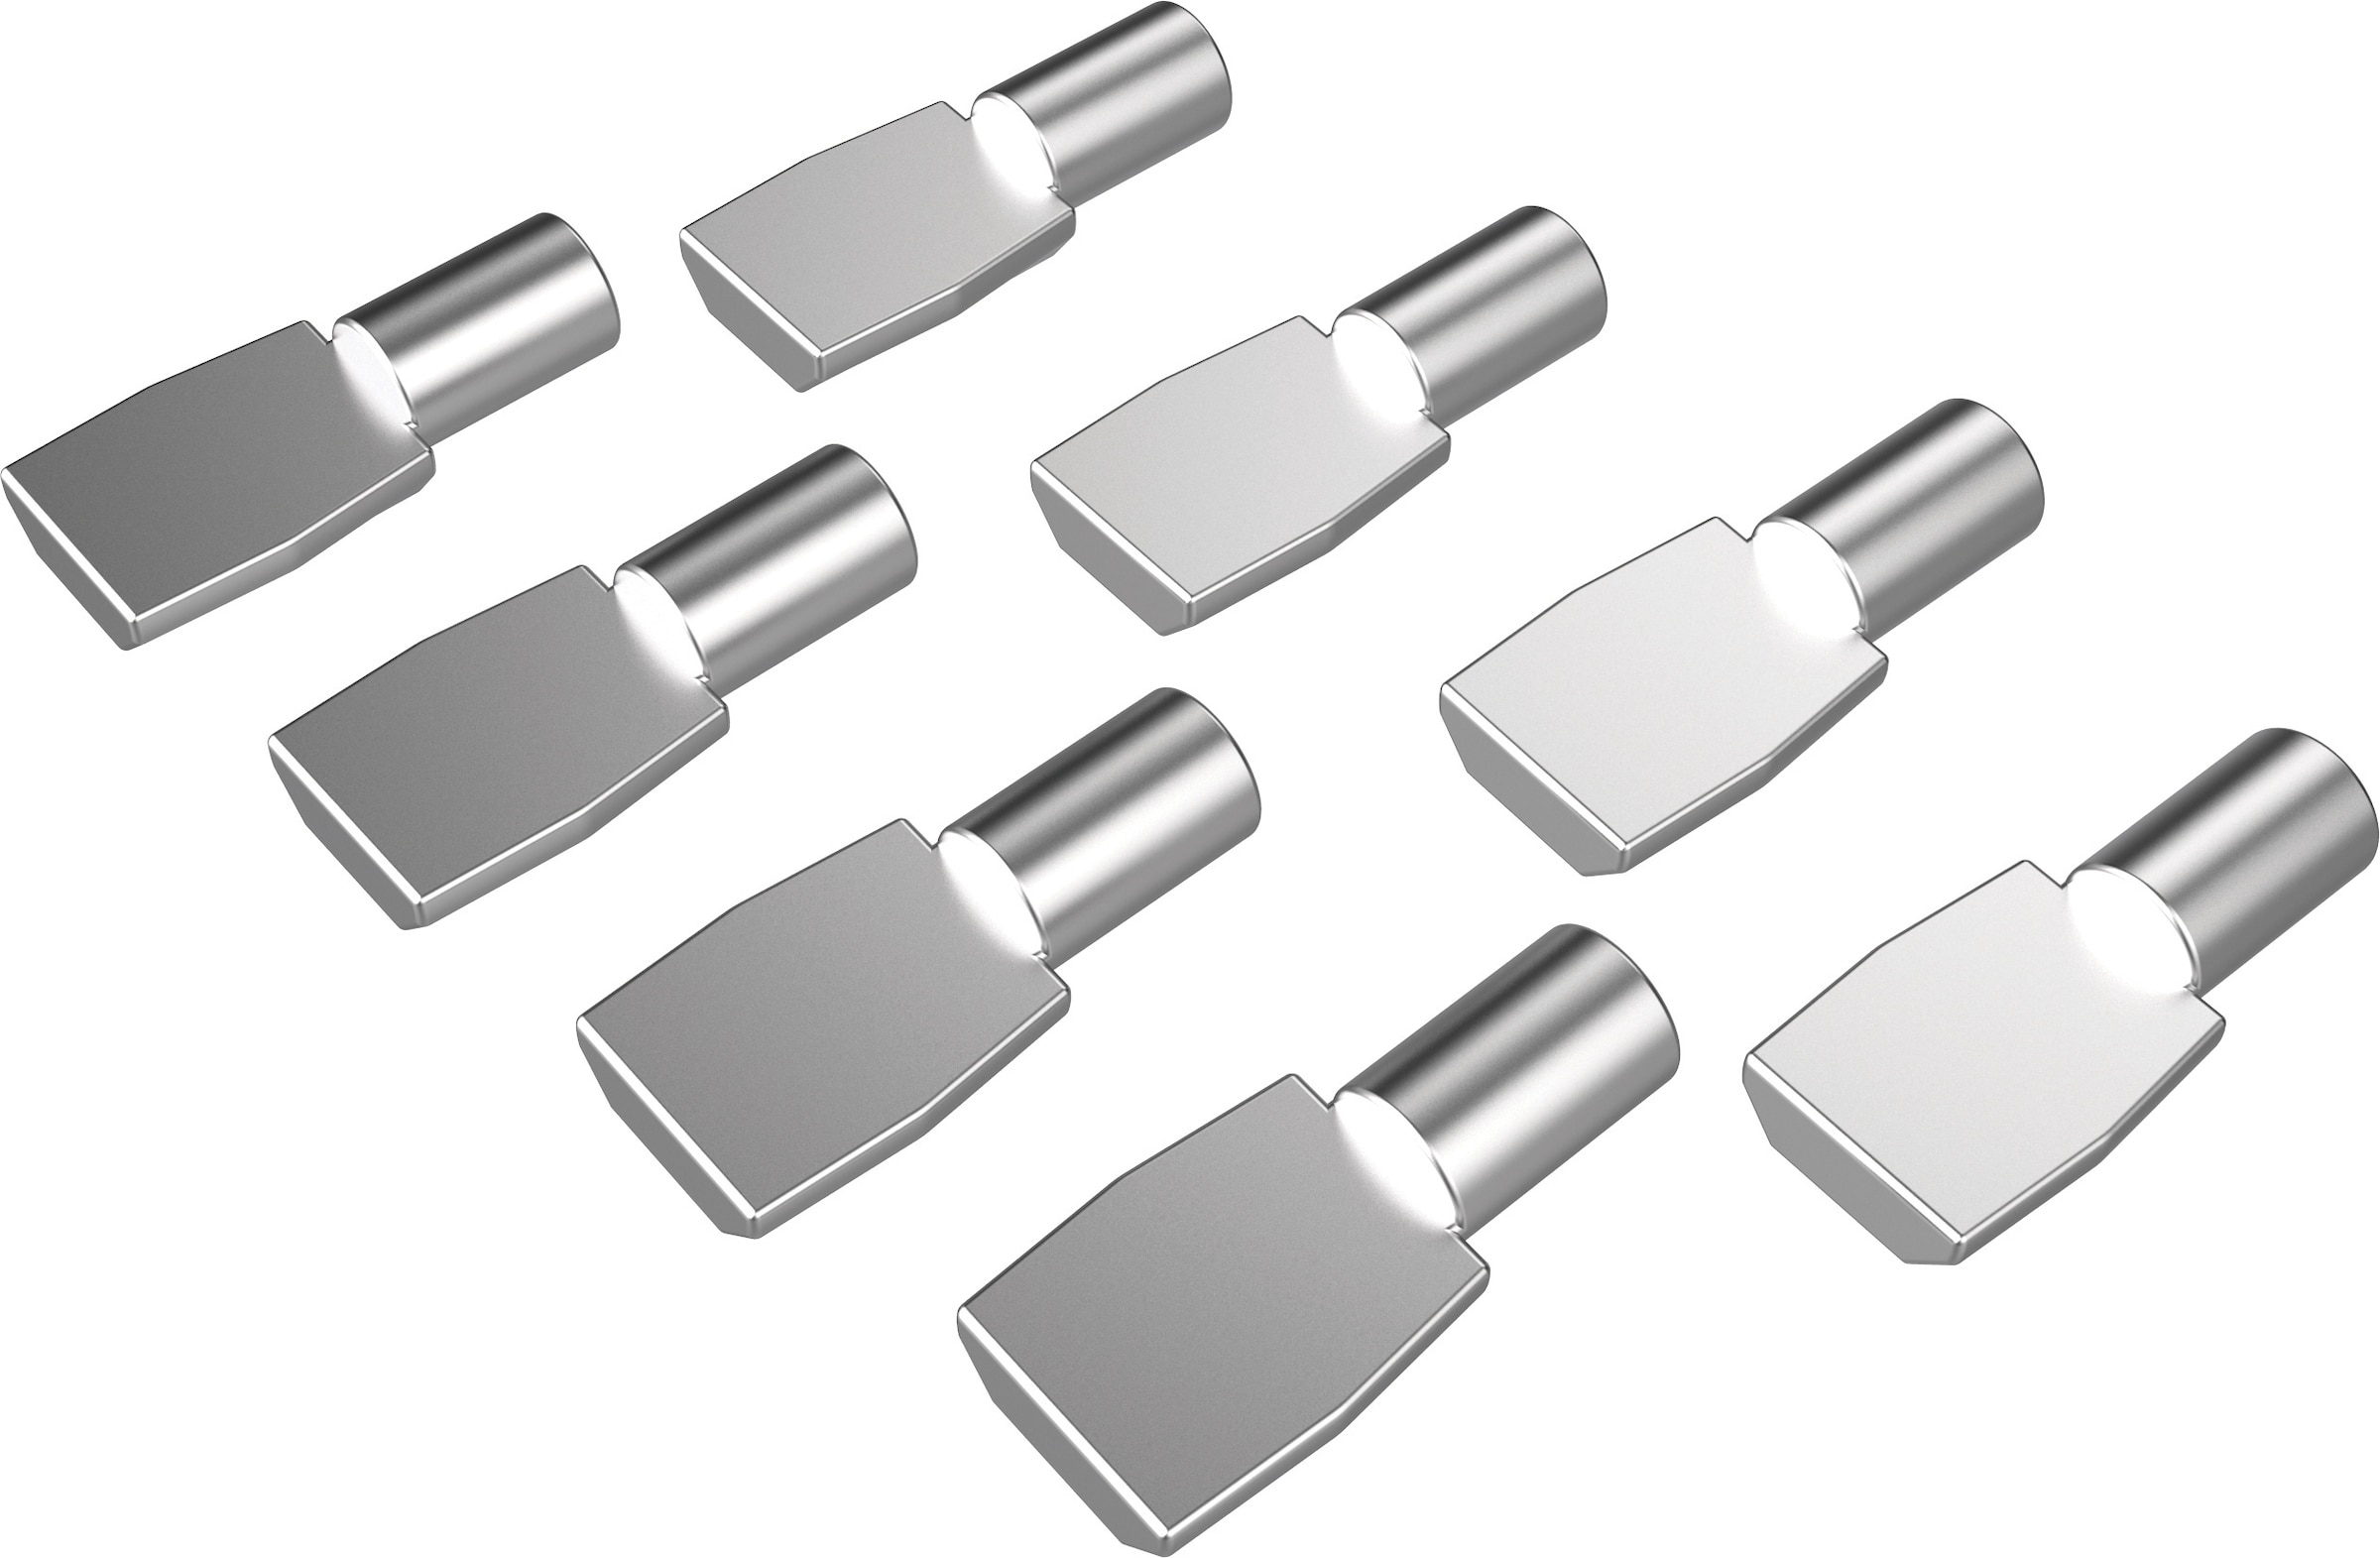 Kreg 0.75-in L x 0.332-in W x 0.19-in D Shelf Pins (20-Pack) in